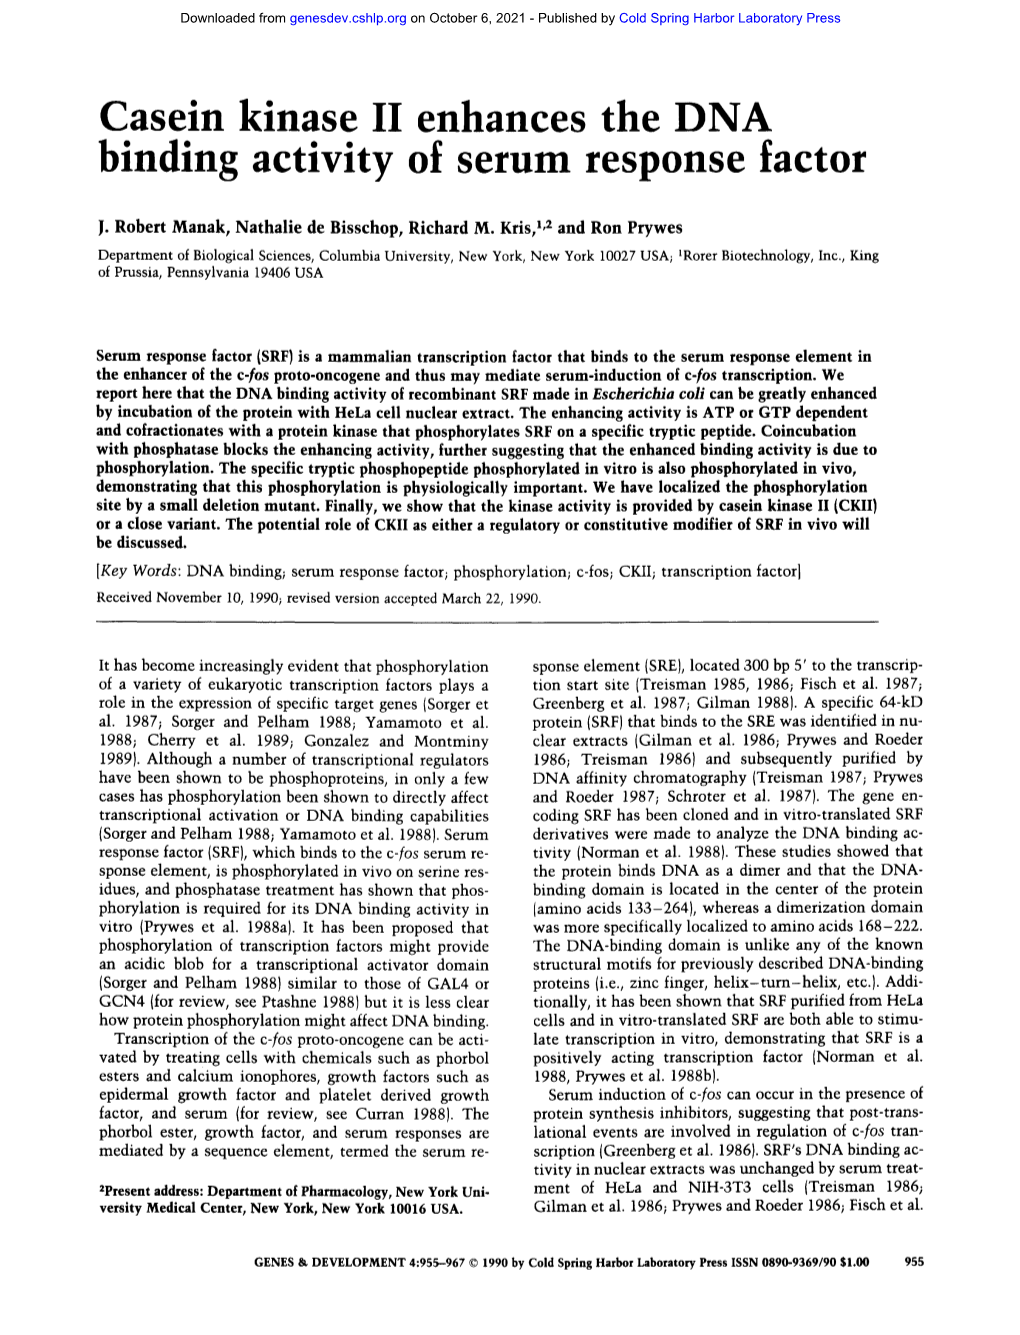 Casein Kinase II Enhances the DNA Binding Activity of Serum Response Factor